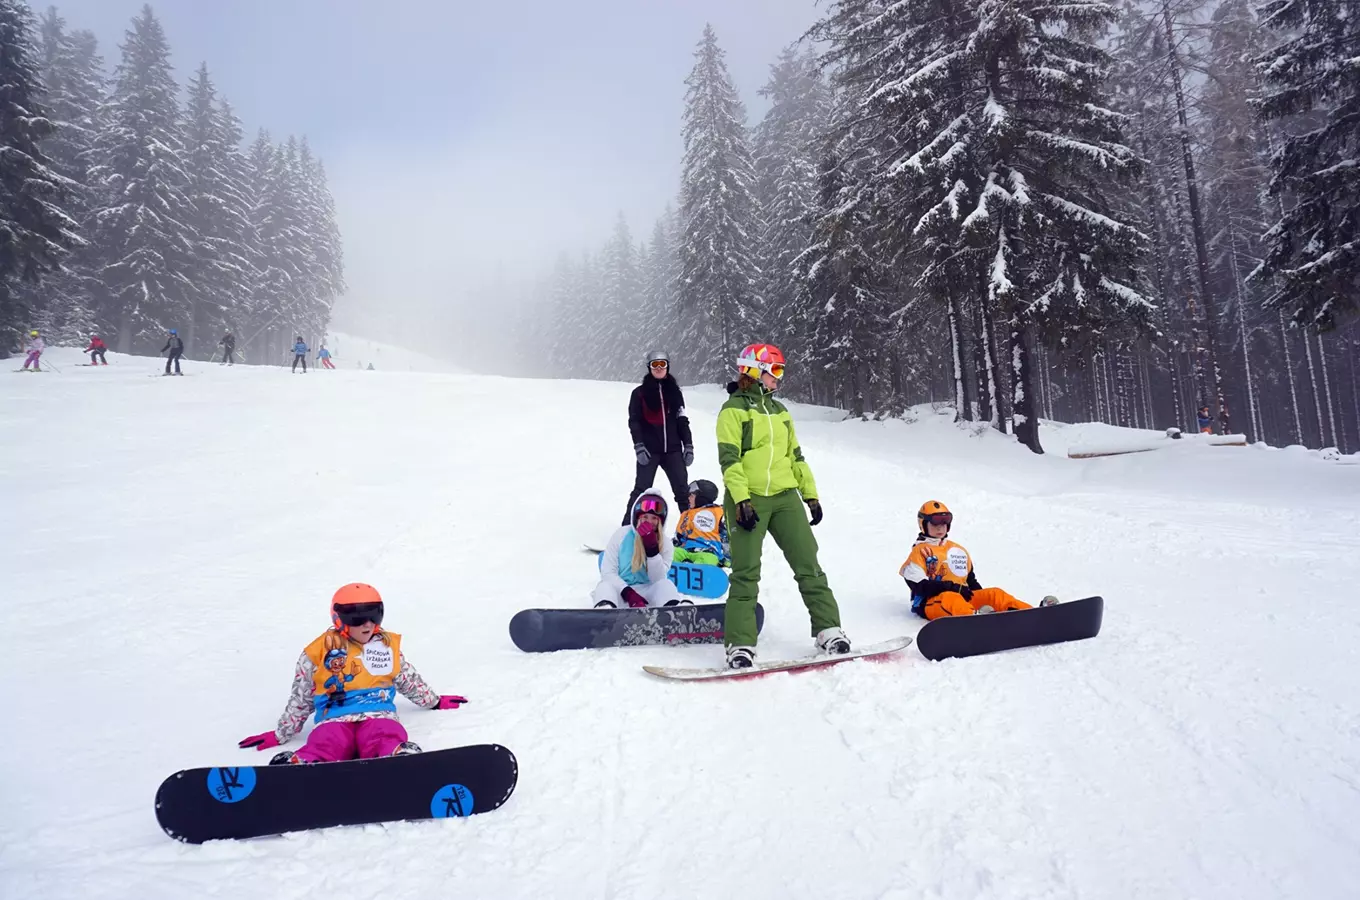 Ski areál Špičák zahajuje sezónu – lyžaři si užijí většinu sjezdovek